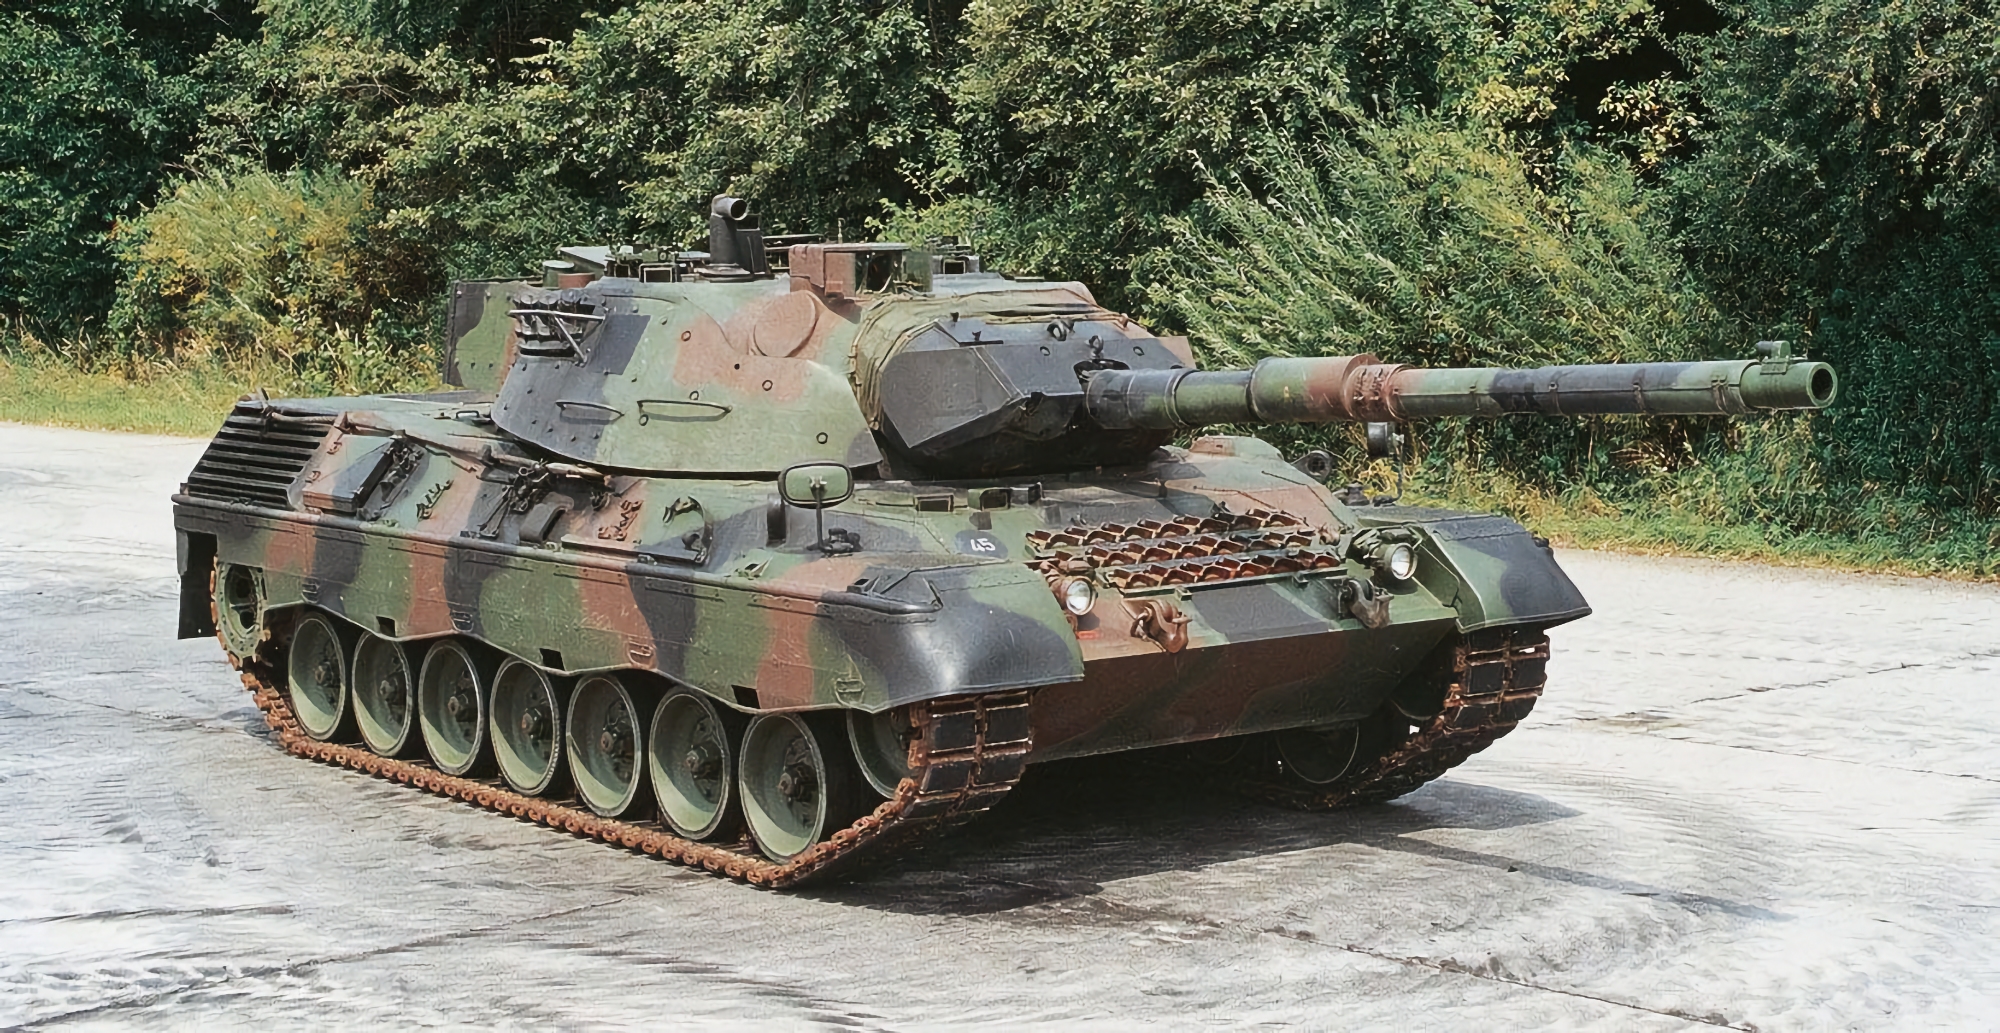 Grande aggiunta al Leopard 2: il governo tedesco approva la consegna di 88 carri armati Leopard 1 all'Ucraina